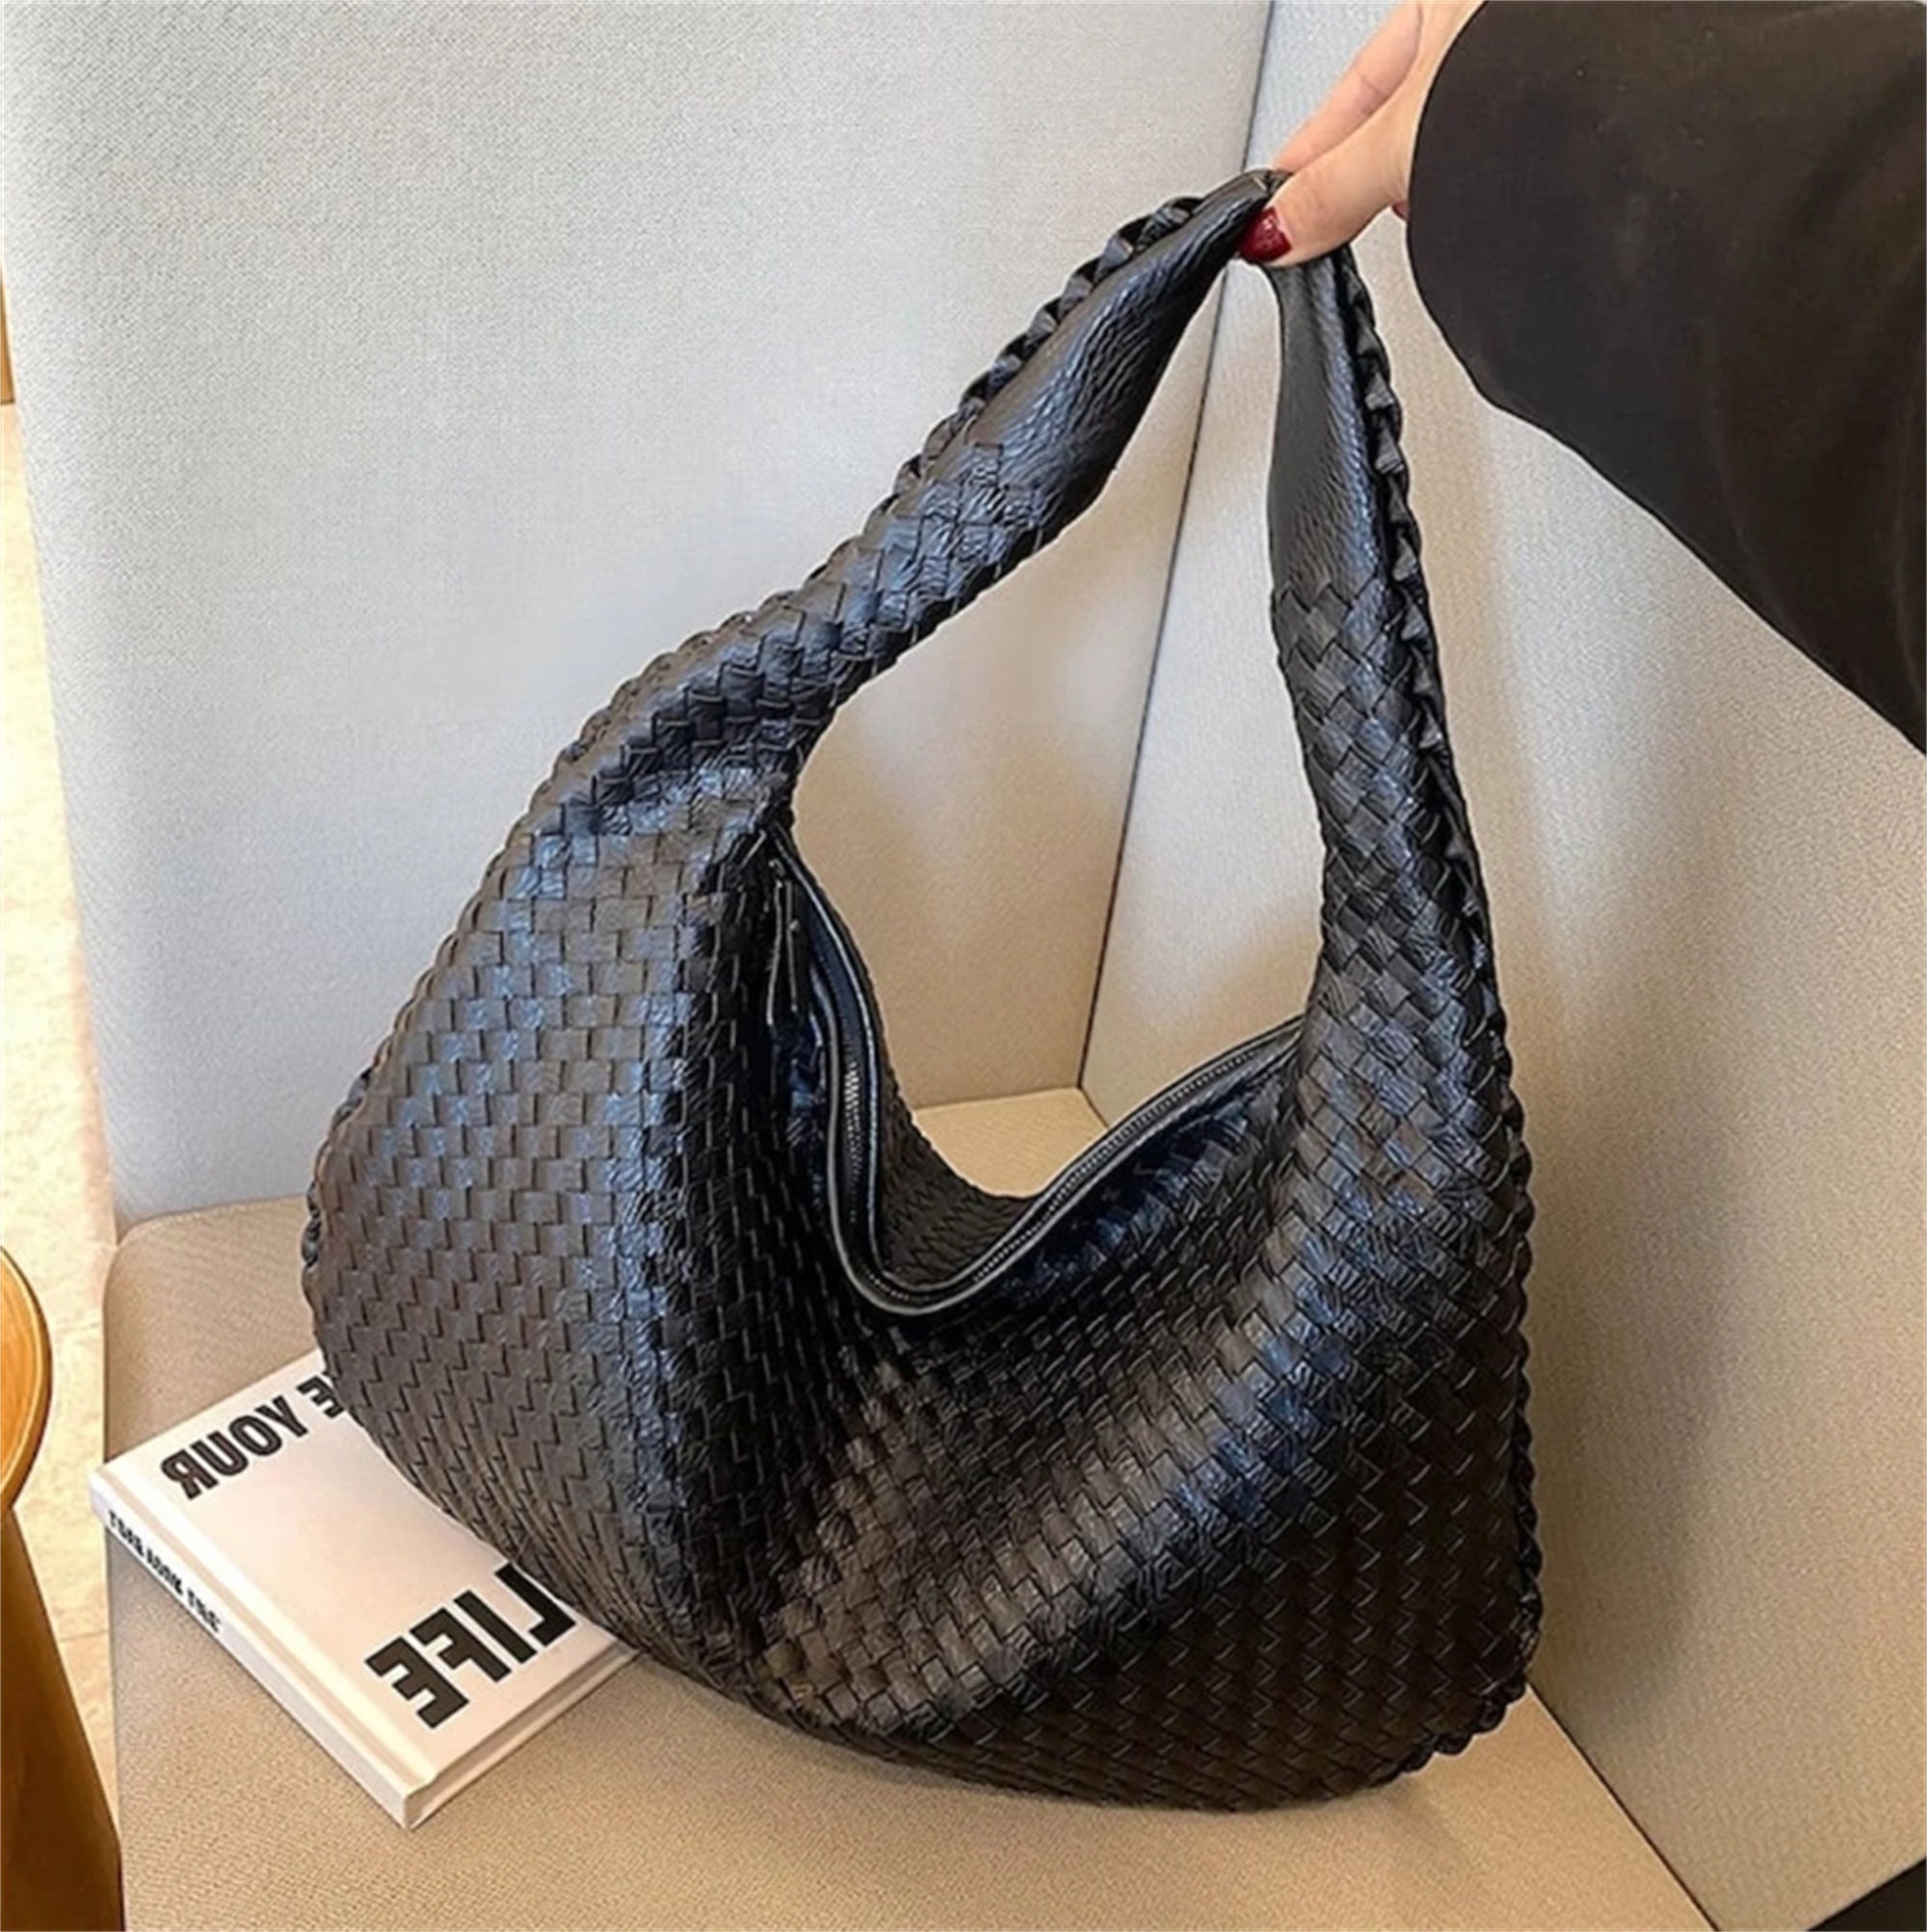 Sardine Mini Leather Shoulder Bag in Neutrals - Bottega Veneta